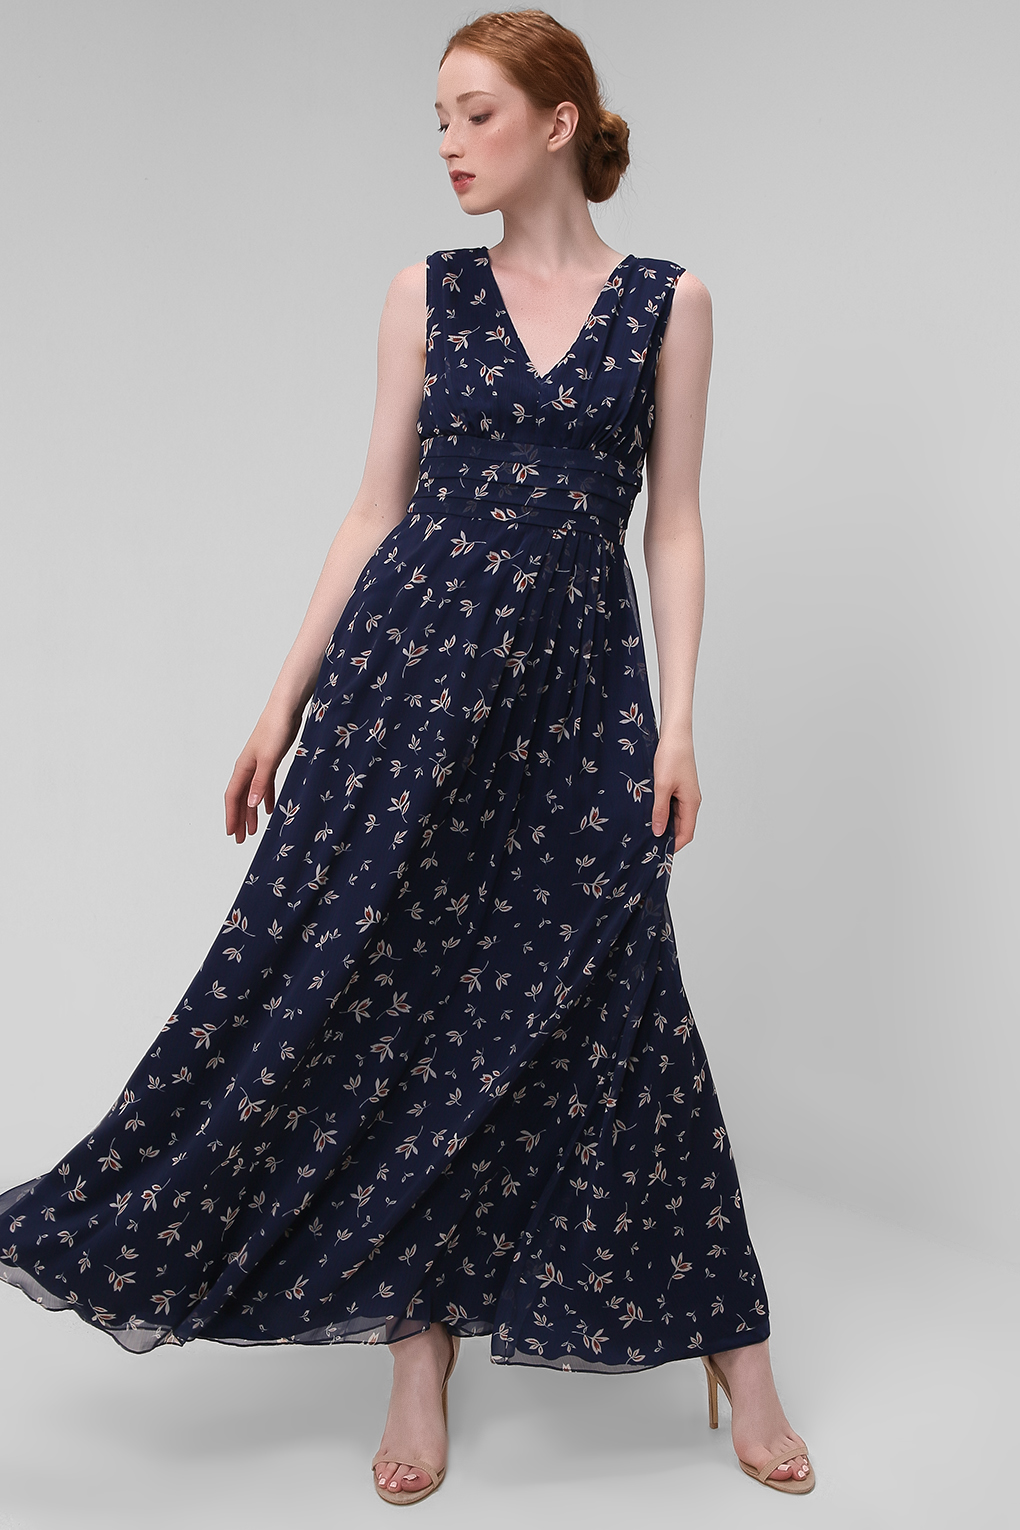 фото Платье женское sabrina scala ss21025174 синее 44